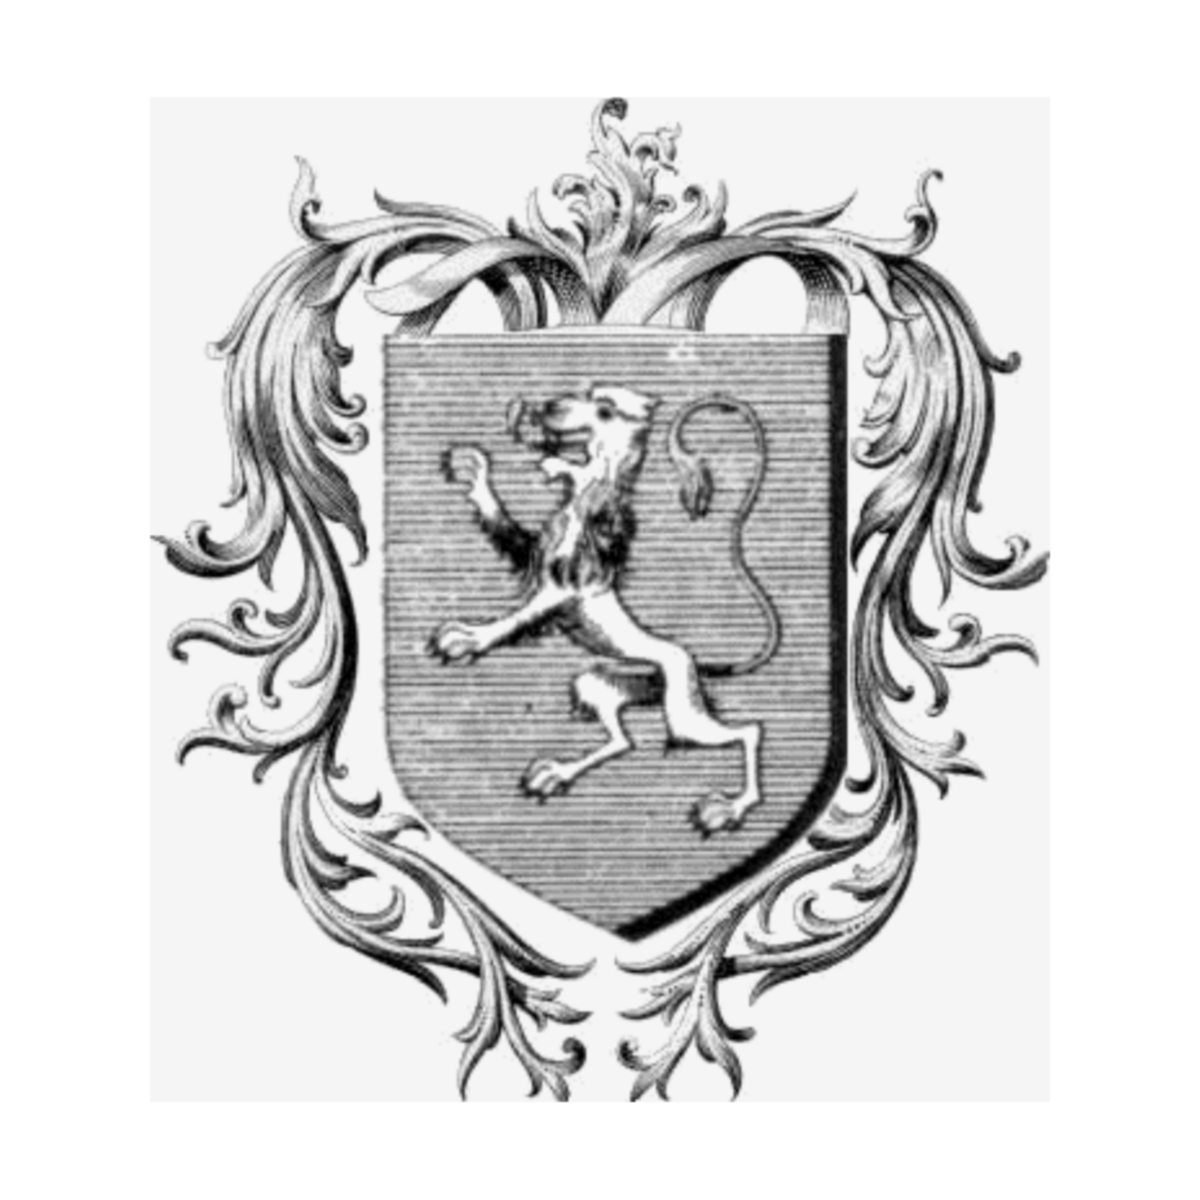 Wappen der FamilieAdam